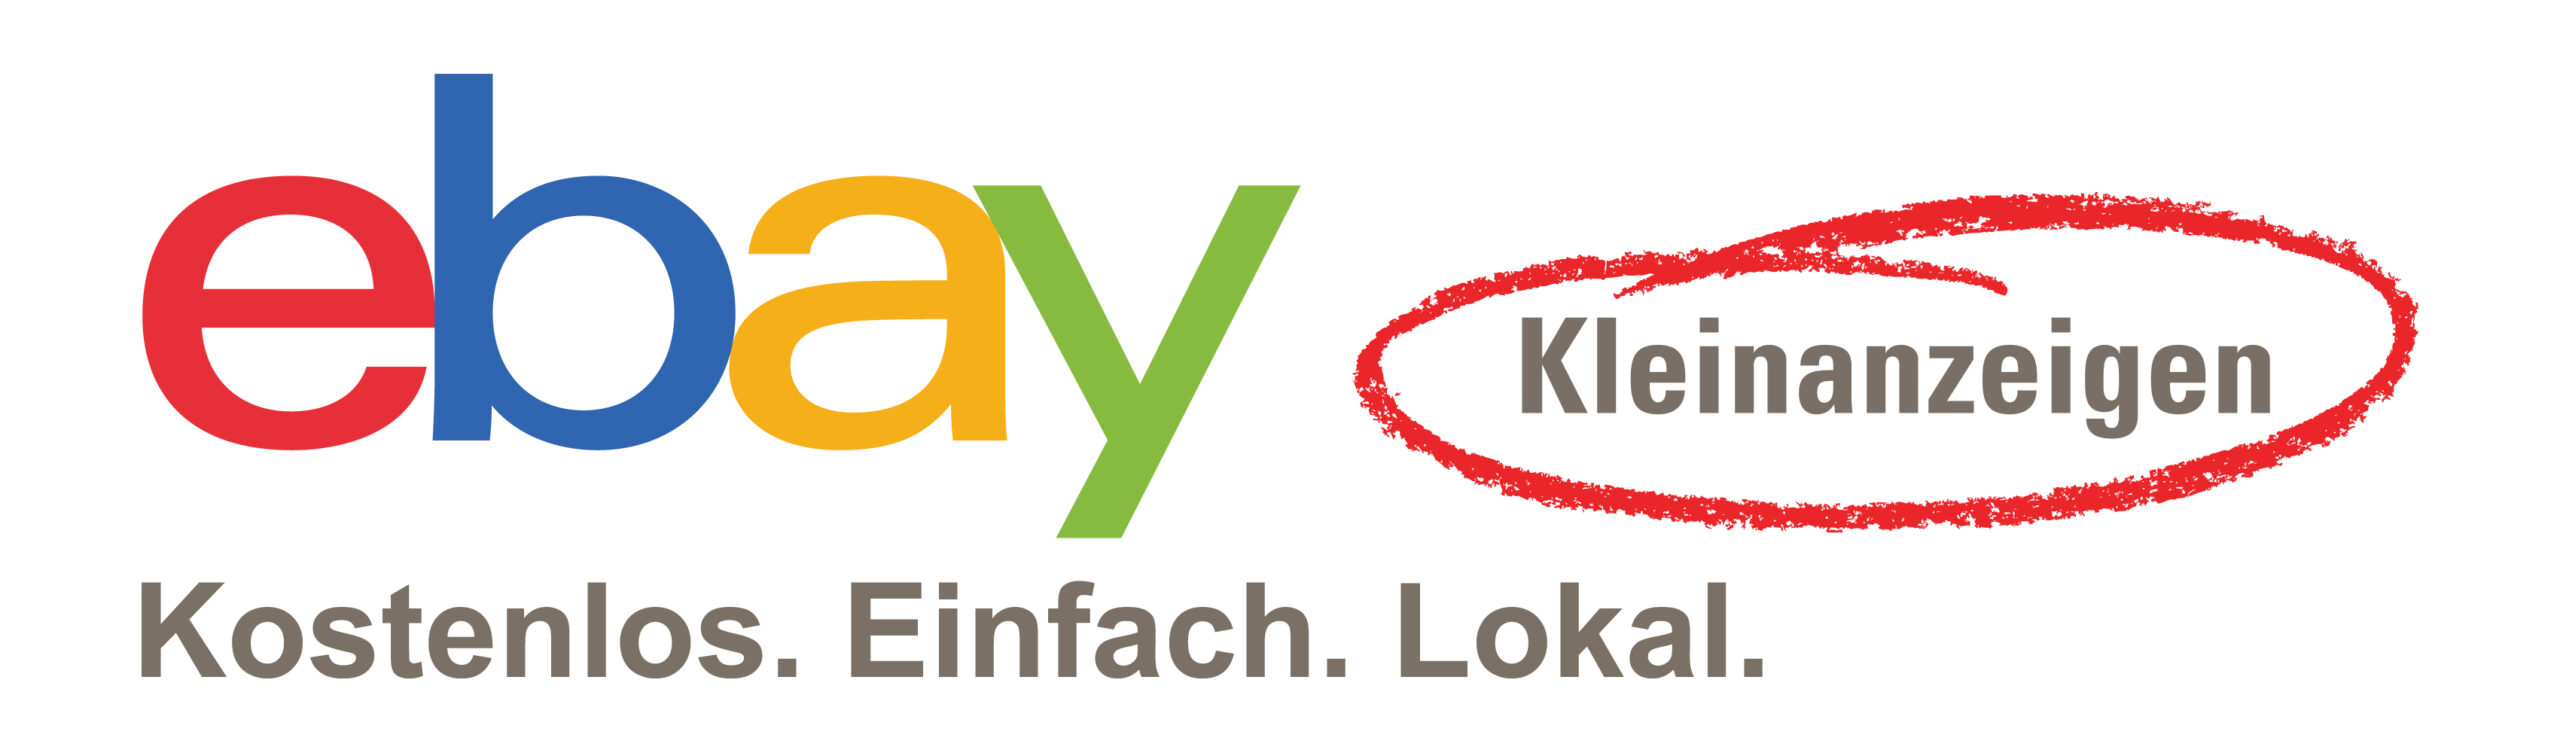 ebay-kleinanzeigen_logo_claim_rgb